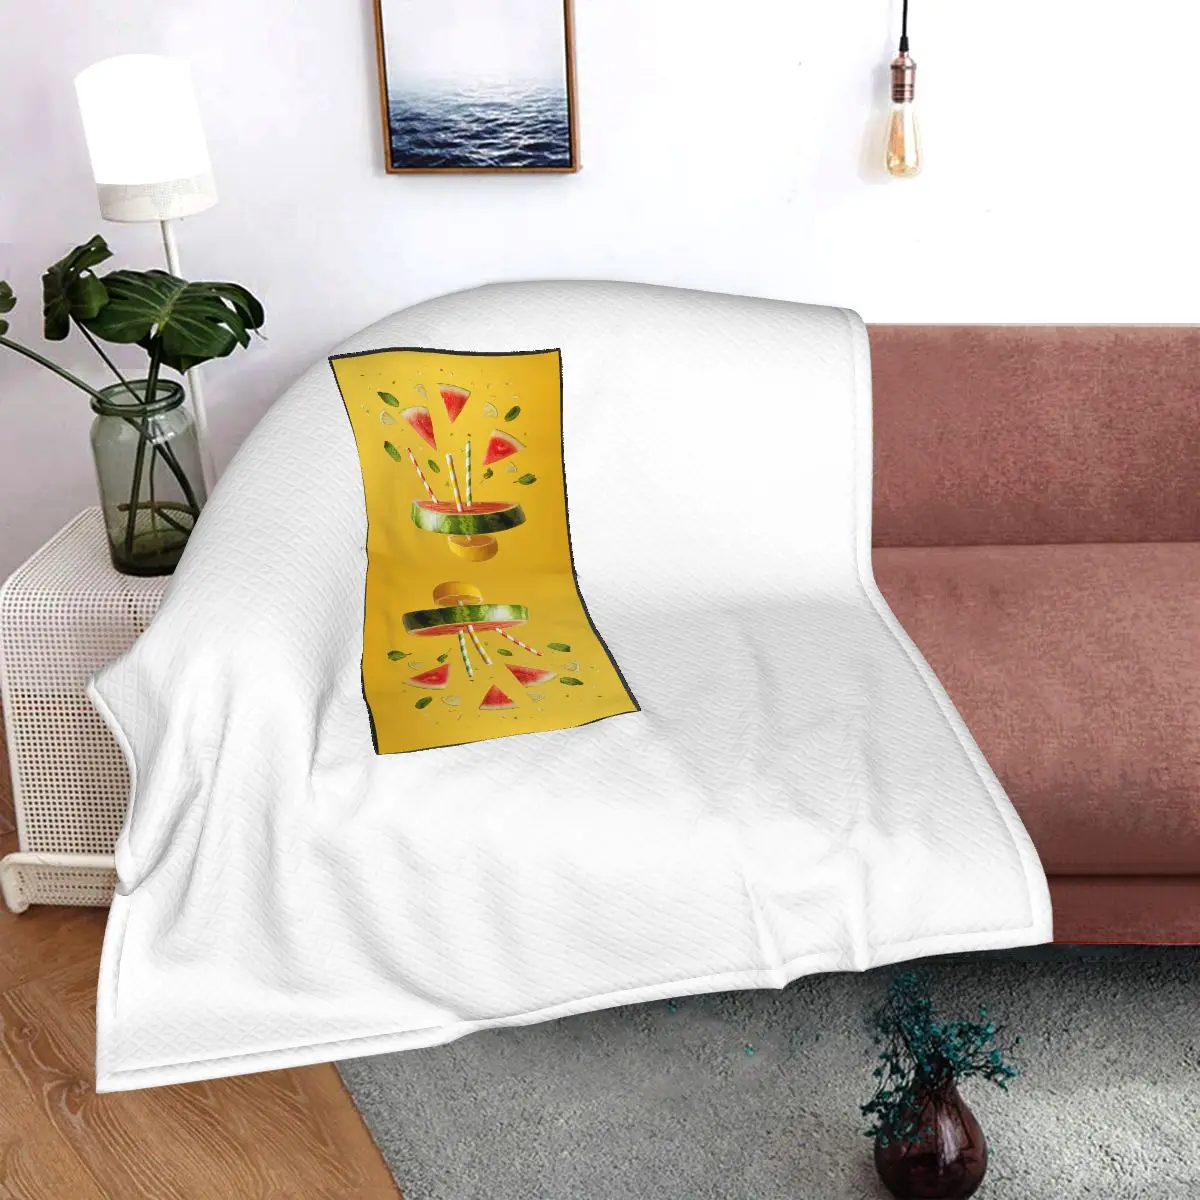 

Jhk-1624001862902 Printed car pillow blanket, bolster blanket, sofa blanket